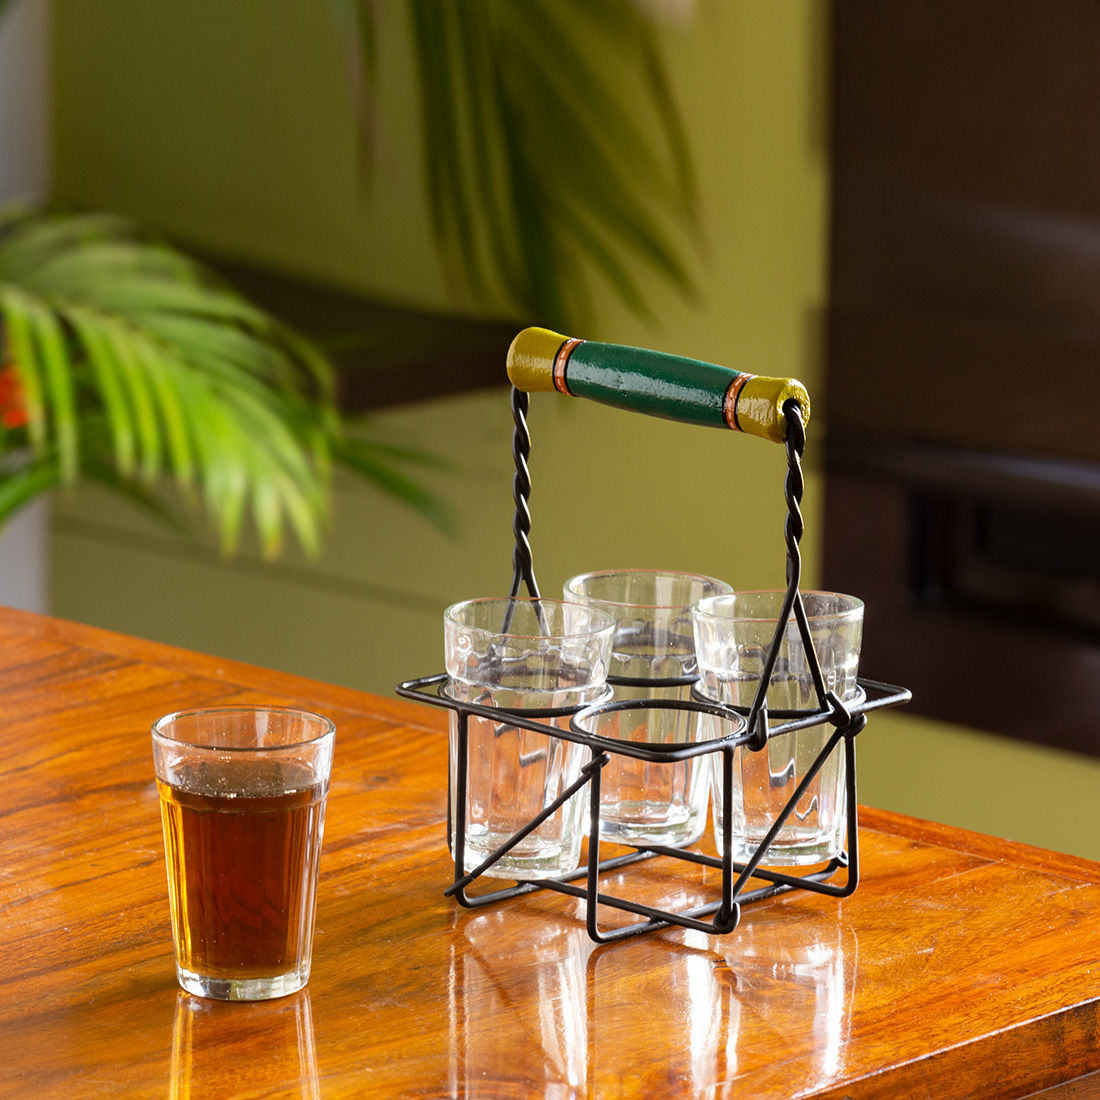 ExclusiveLane The Railway Nostalgia' Cutting Chai Tea Glasses Set With Holder (Set of 4, 120 ml)